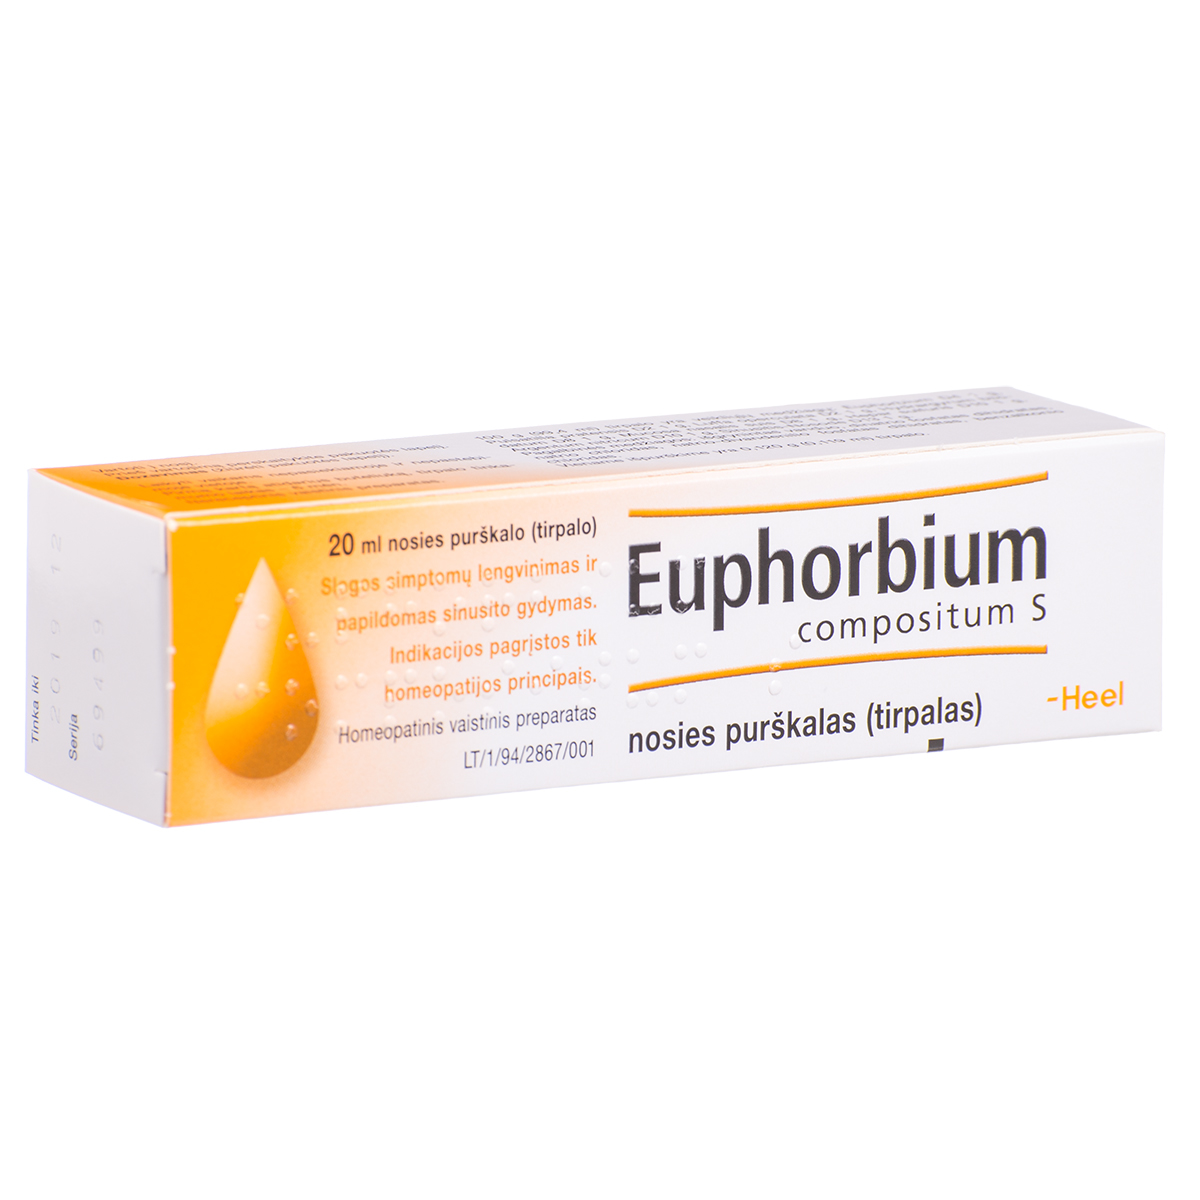 EUPHORBIUM COMPOSITUM S, nosies purškalas (tirpalas), 20 ml